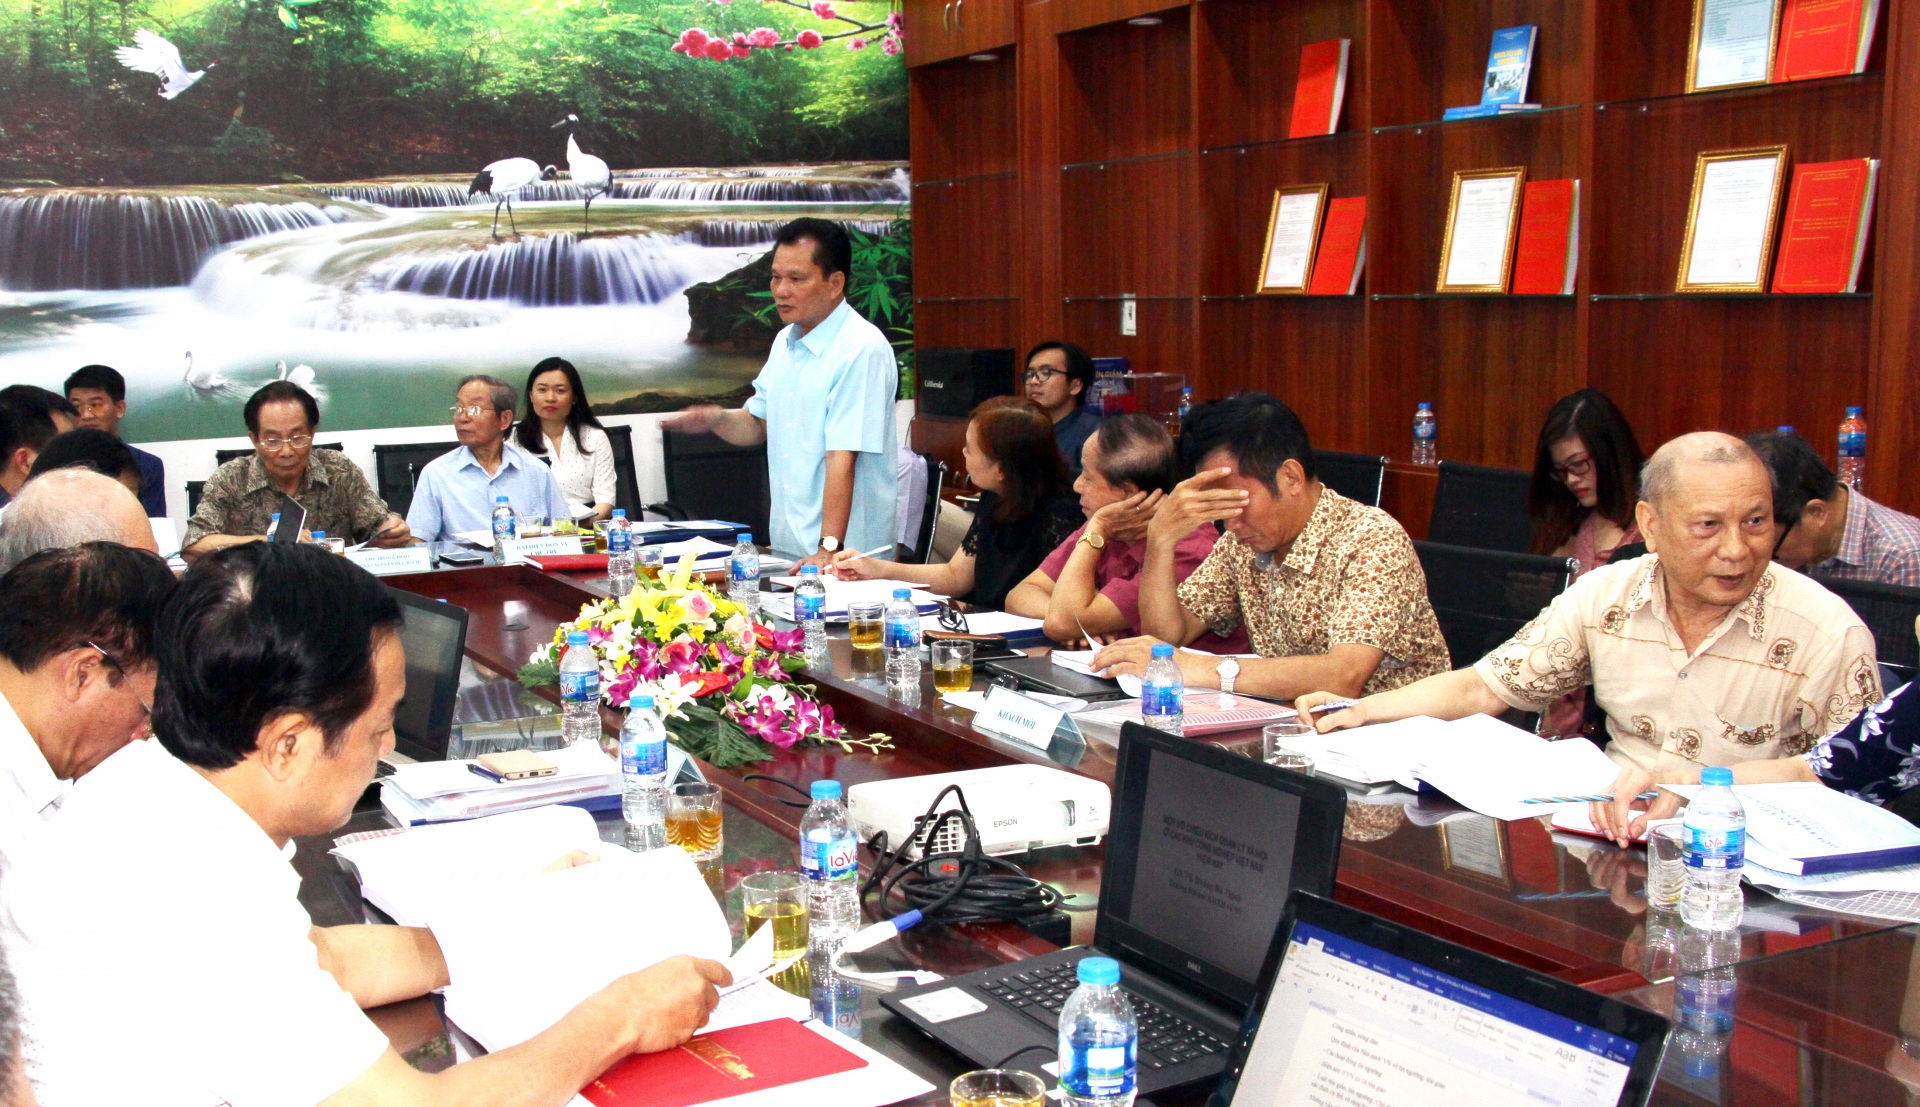 Hội thảo khoa học “Quản lý các vấn đề xã hội tại các khu công nghiệp ở Việt Nam: Thực trạng và giải pháp”